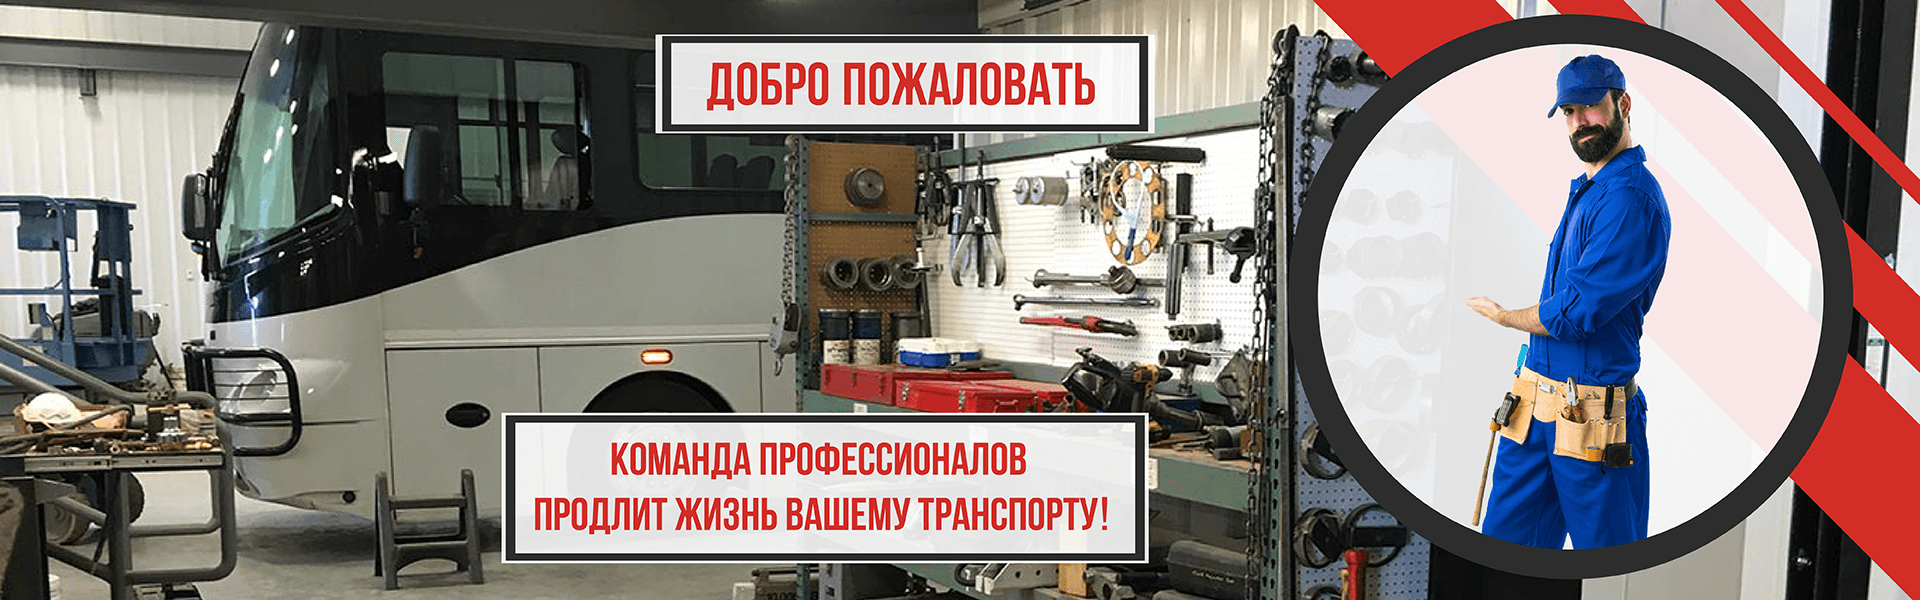 Грузовой автосервис в Минске, ремонт грузовых автомобилей